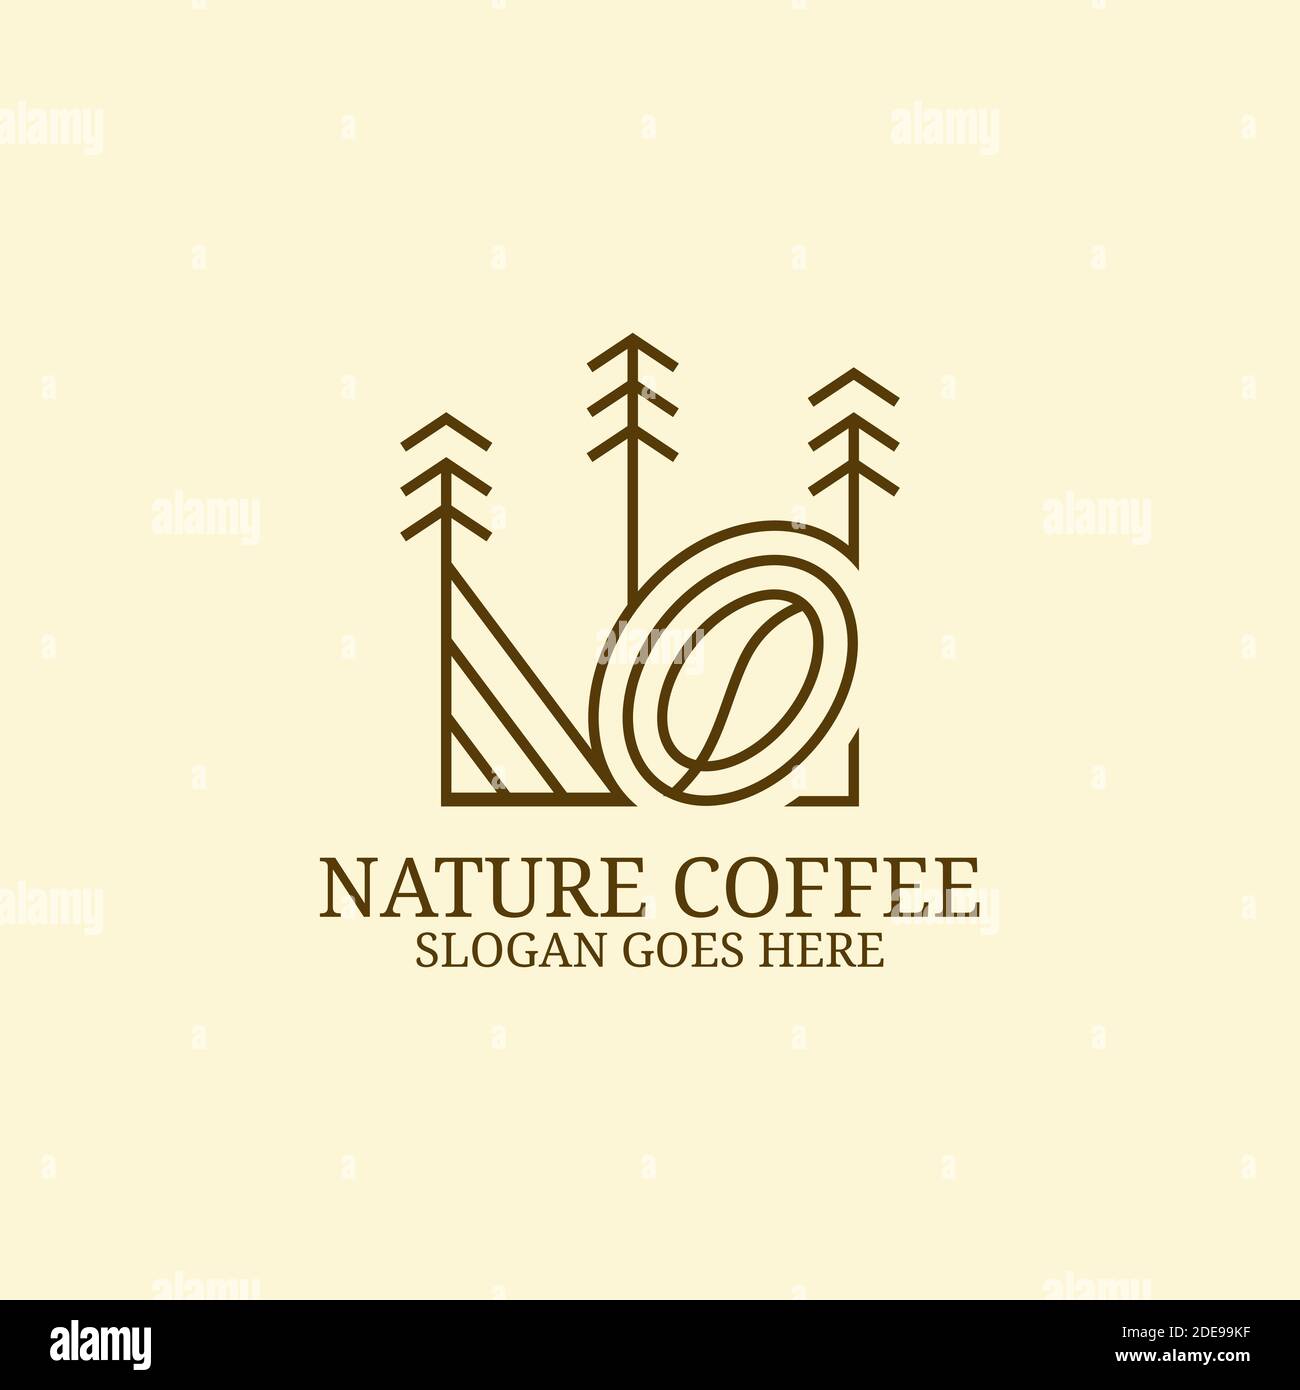 Einfache Linie Kunst Coffee Farm Logo Design-Idee, kann für Ihre Marke, Branding-Identität oder kommerzielle Marke verwenden Stock Vektor